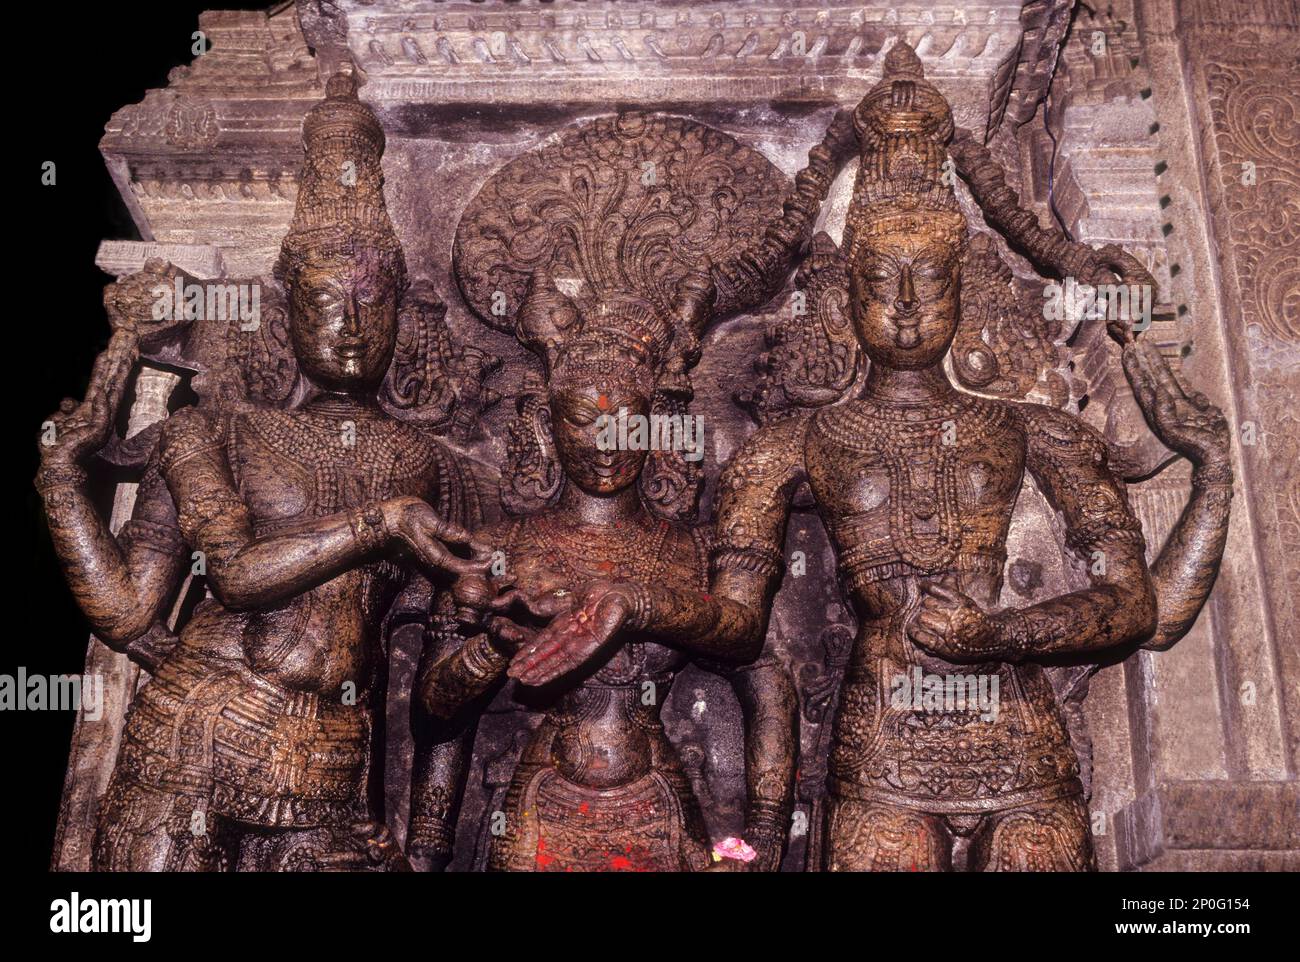 Boda de la Diosa Meenakshi y el Señor Sundareswarar una escultura de tamaño natural dentro del templo Meenakshi, Madurai, Tamil Nadu, India del Sur, India, Asia Foto de stock